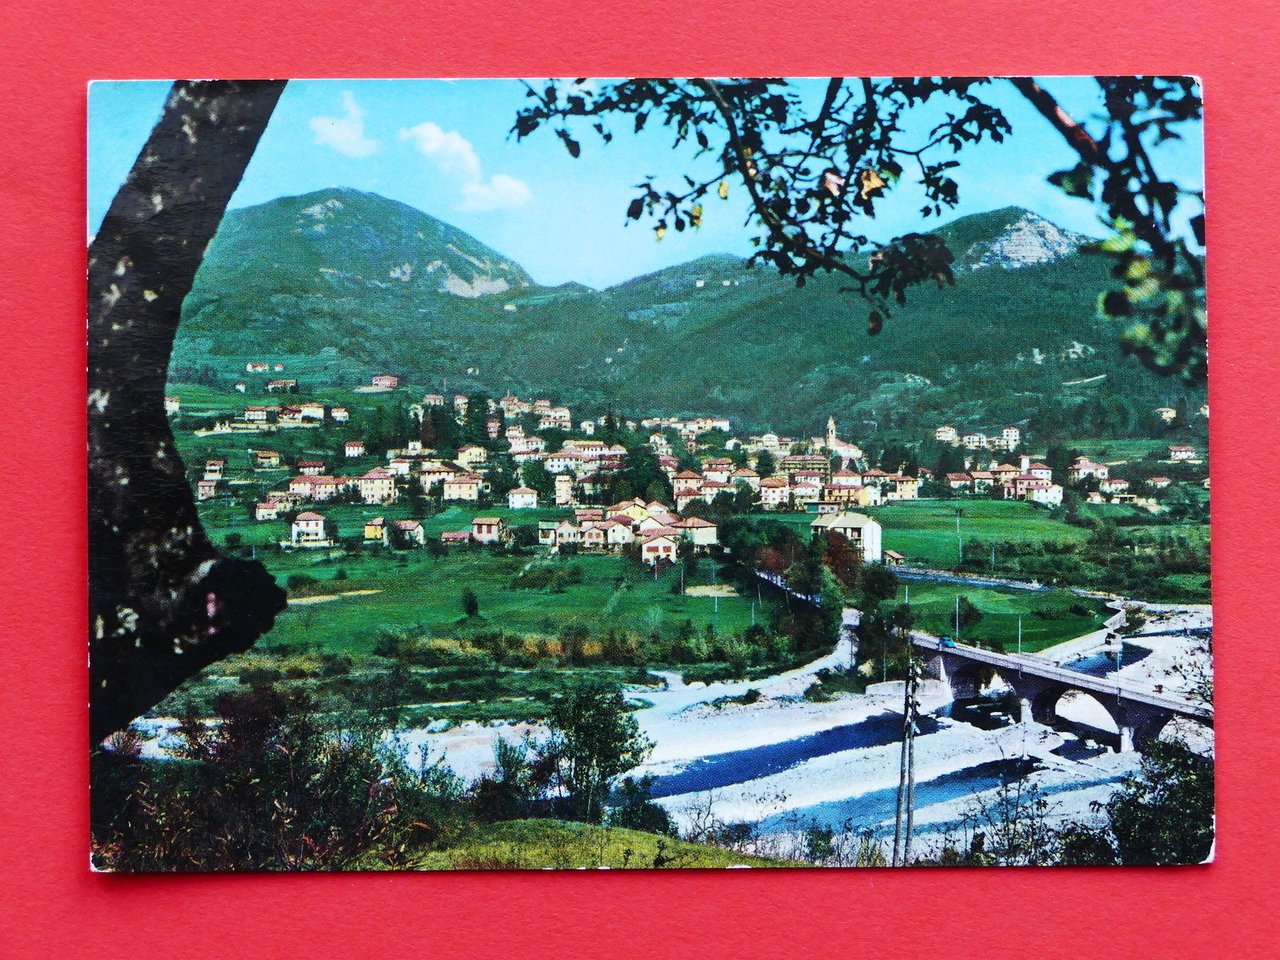 Cartolina Casella - Valle Scrivia - 1964.